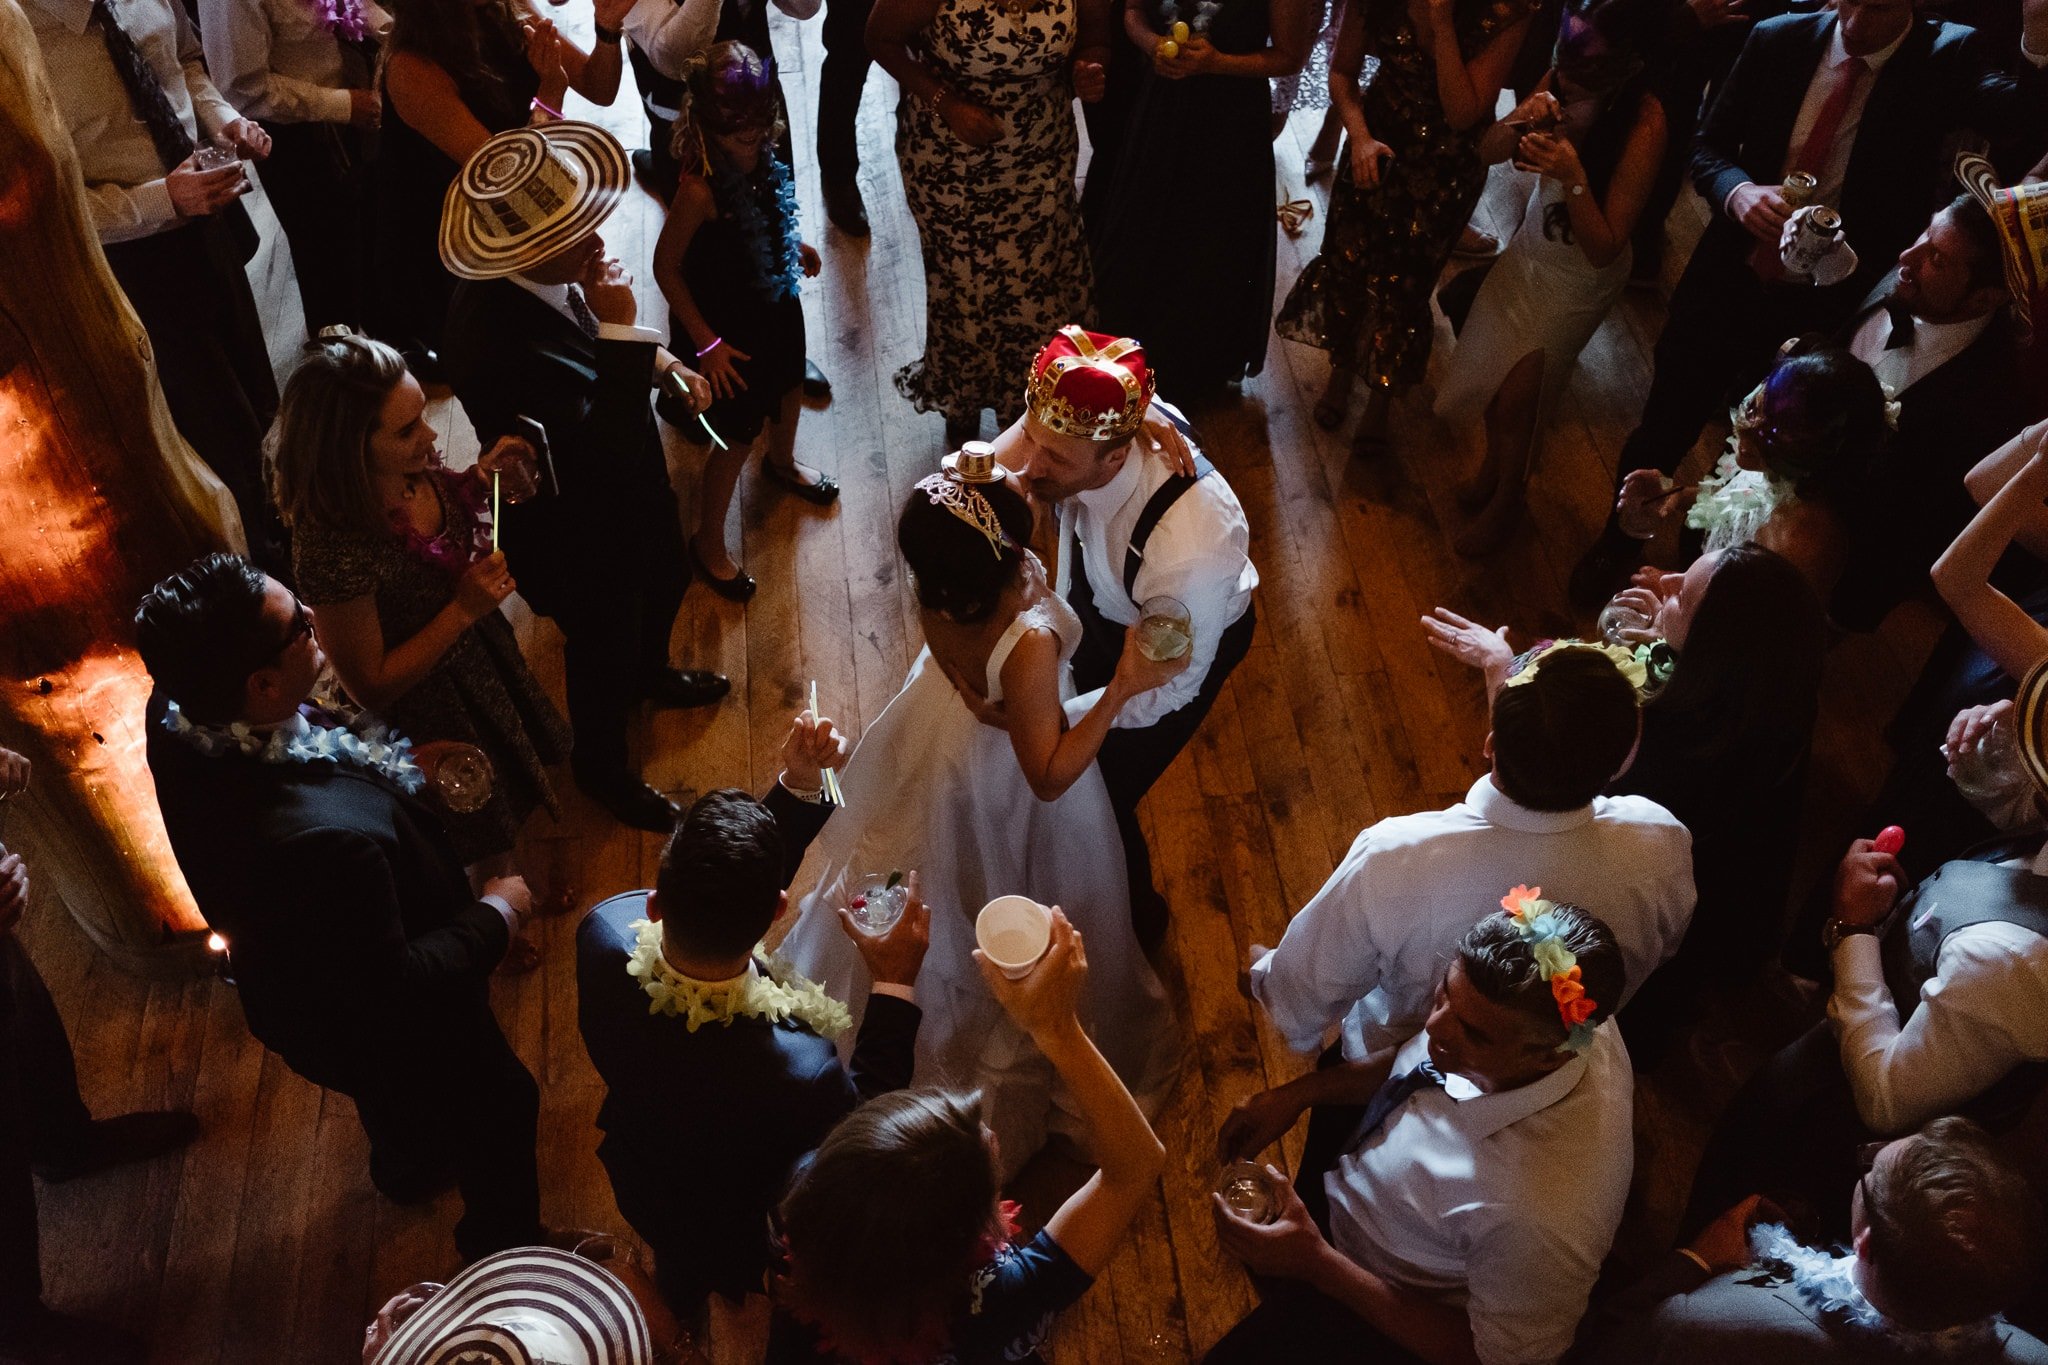 La hora loca reception dancing at Breckenridge Nordic Center wedding, Colorado wedding photographer